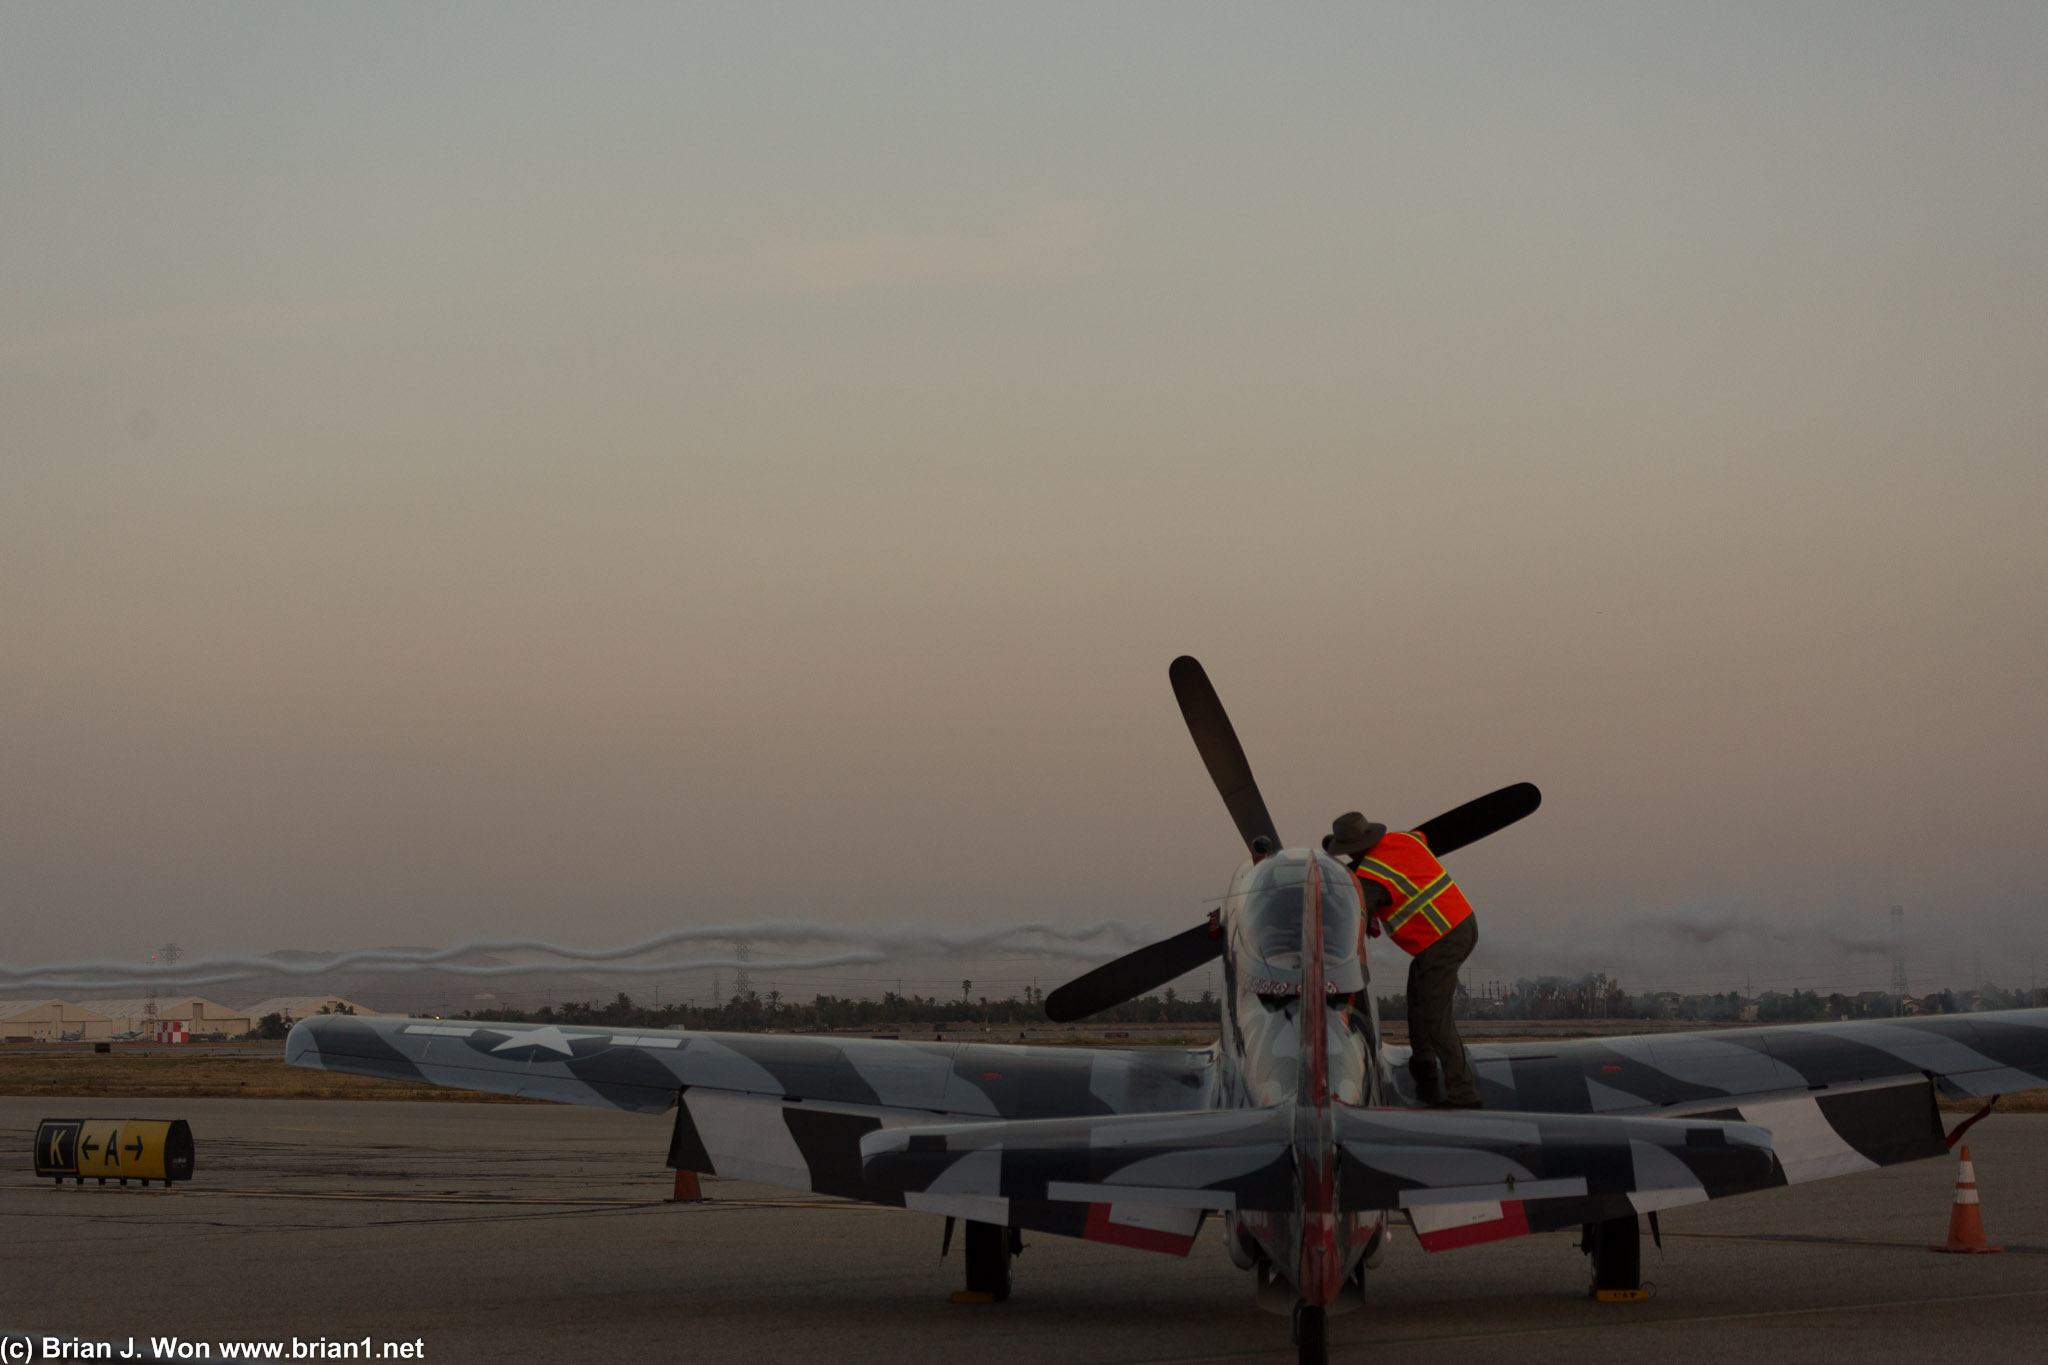 North American P-51D Mustang "Man O' War" at sunset.